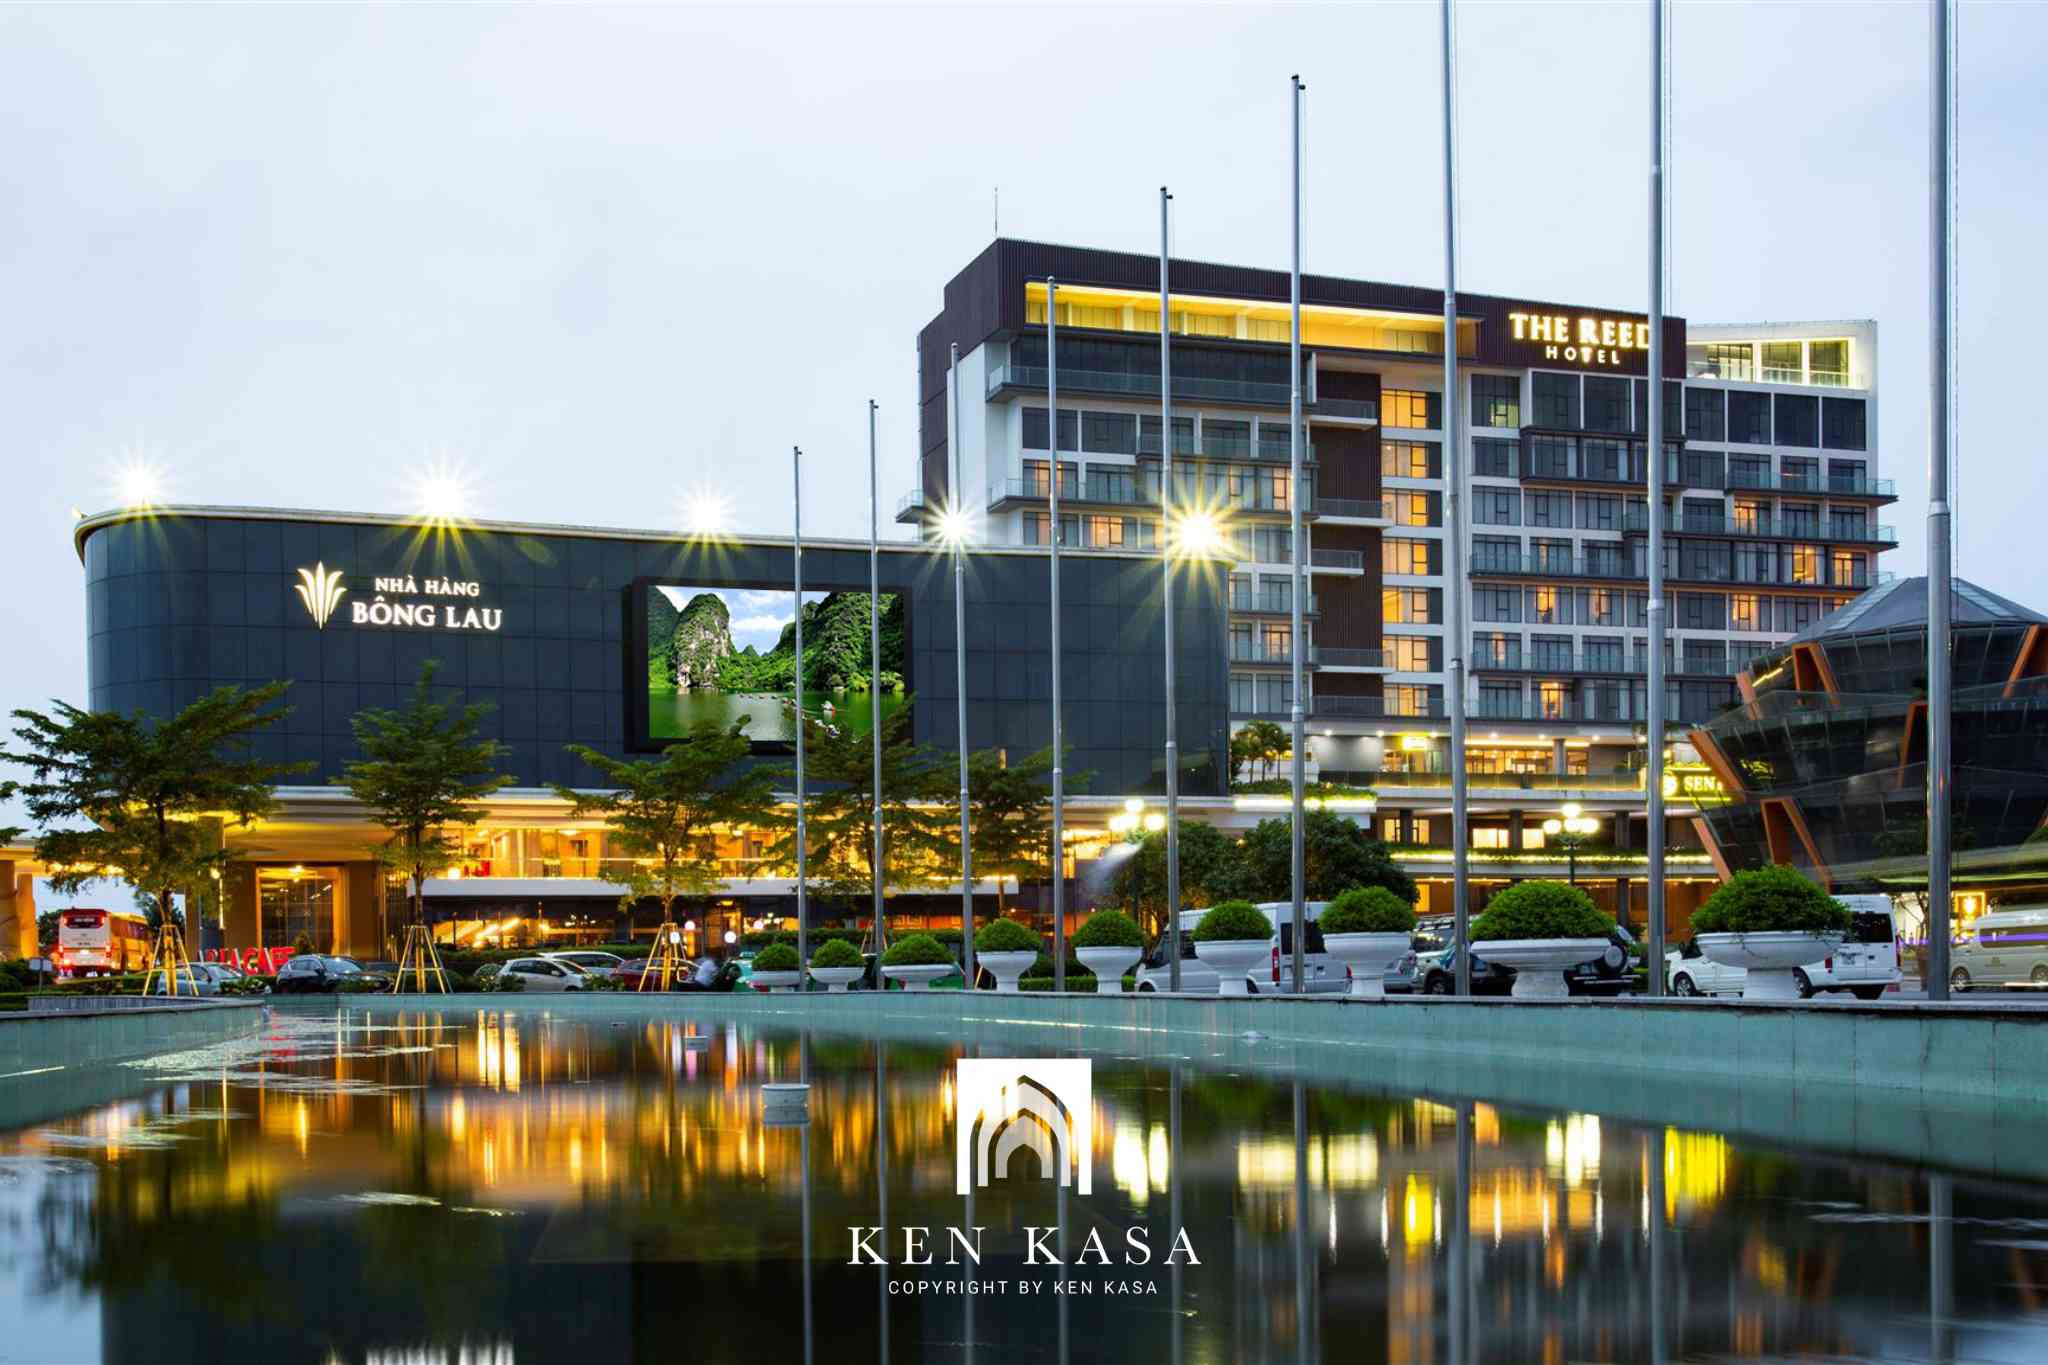 Review The Reed Ninh Bình Hotel thiết kế hiện đại giữa lòng thành phố